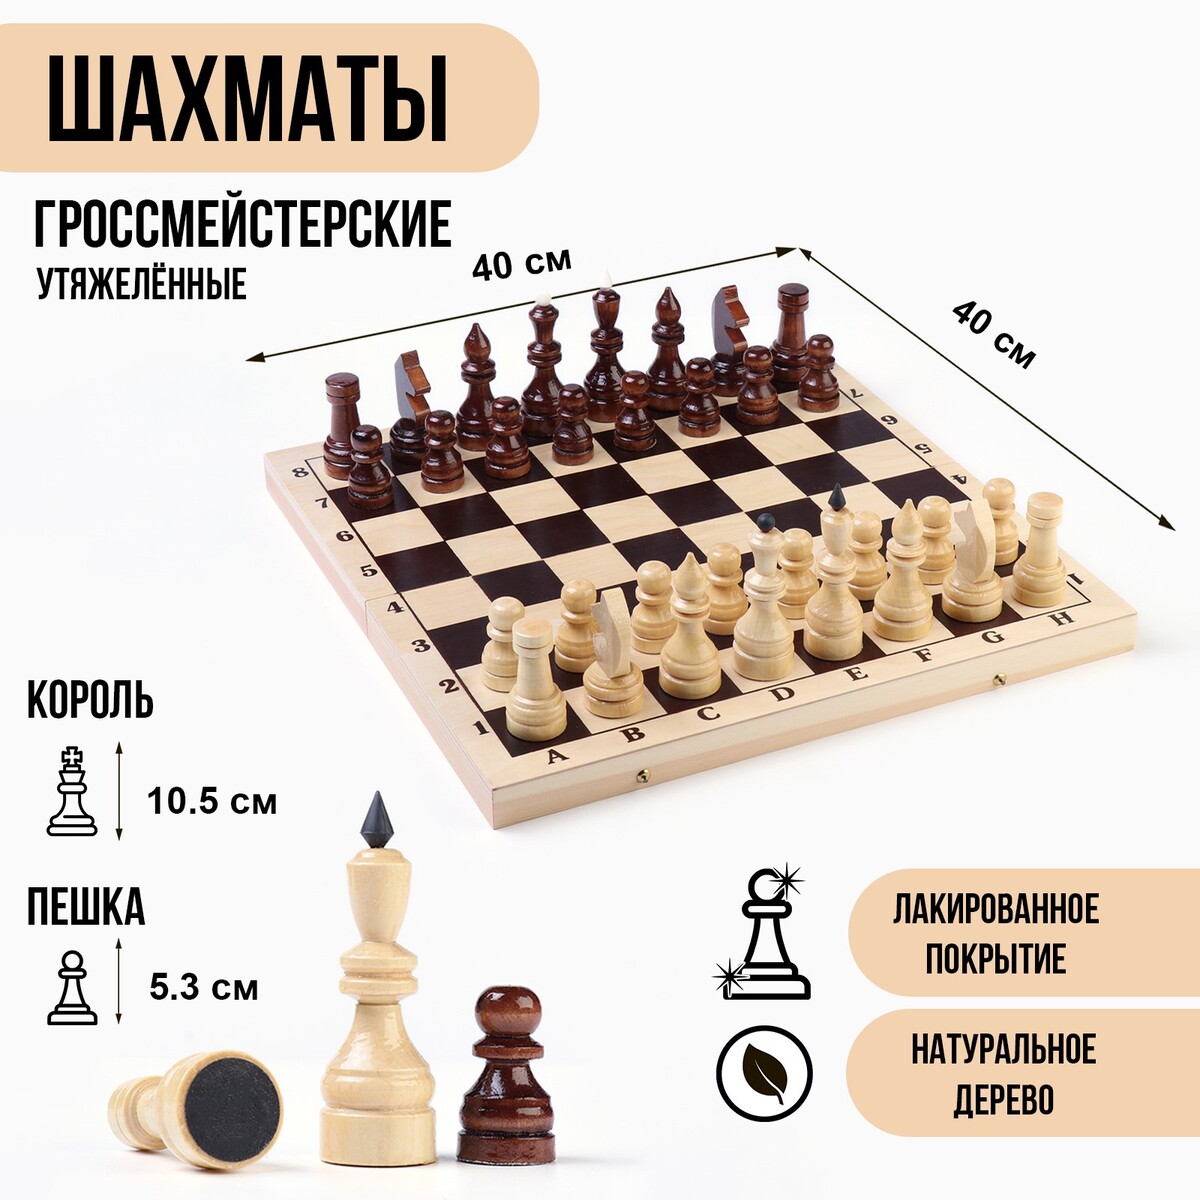 Шахматы гроссмейстерские, турнирные, утяжеленные, 40х40 см, король h=10.5 см, пешка 5.3 см No brand